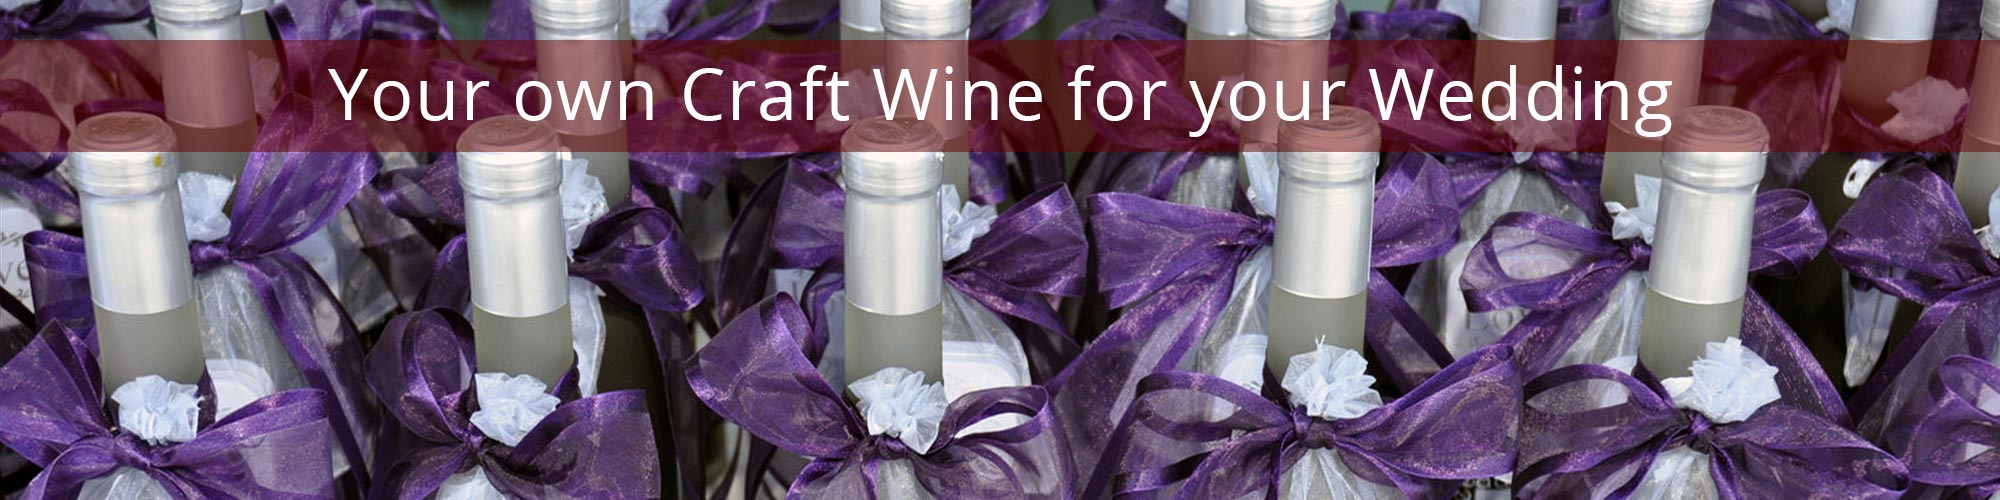 3wedding craft wine